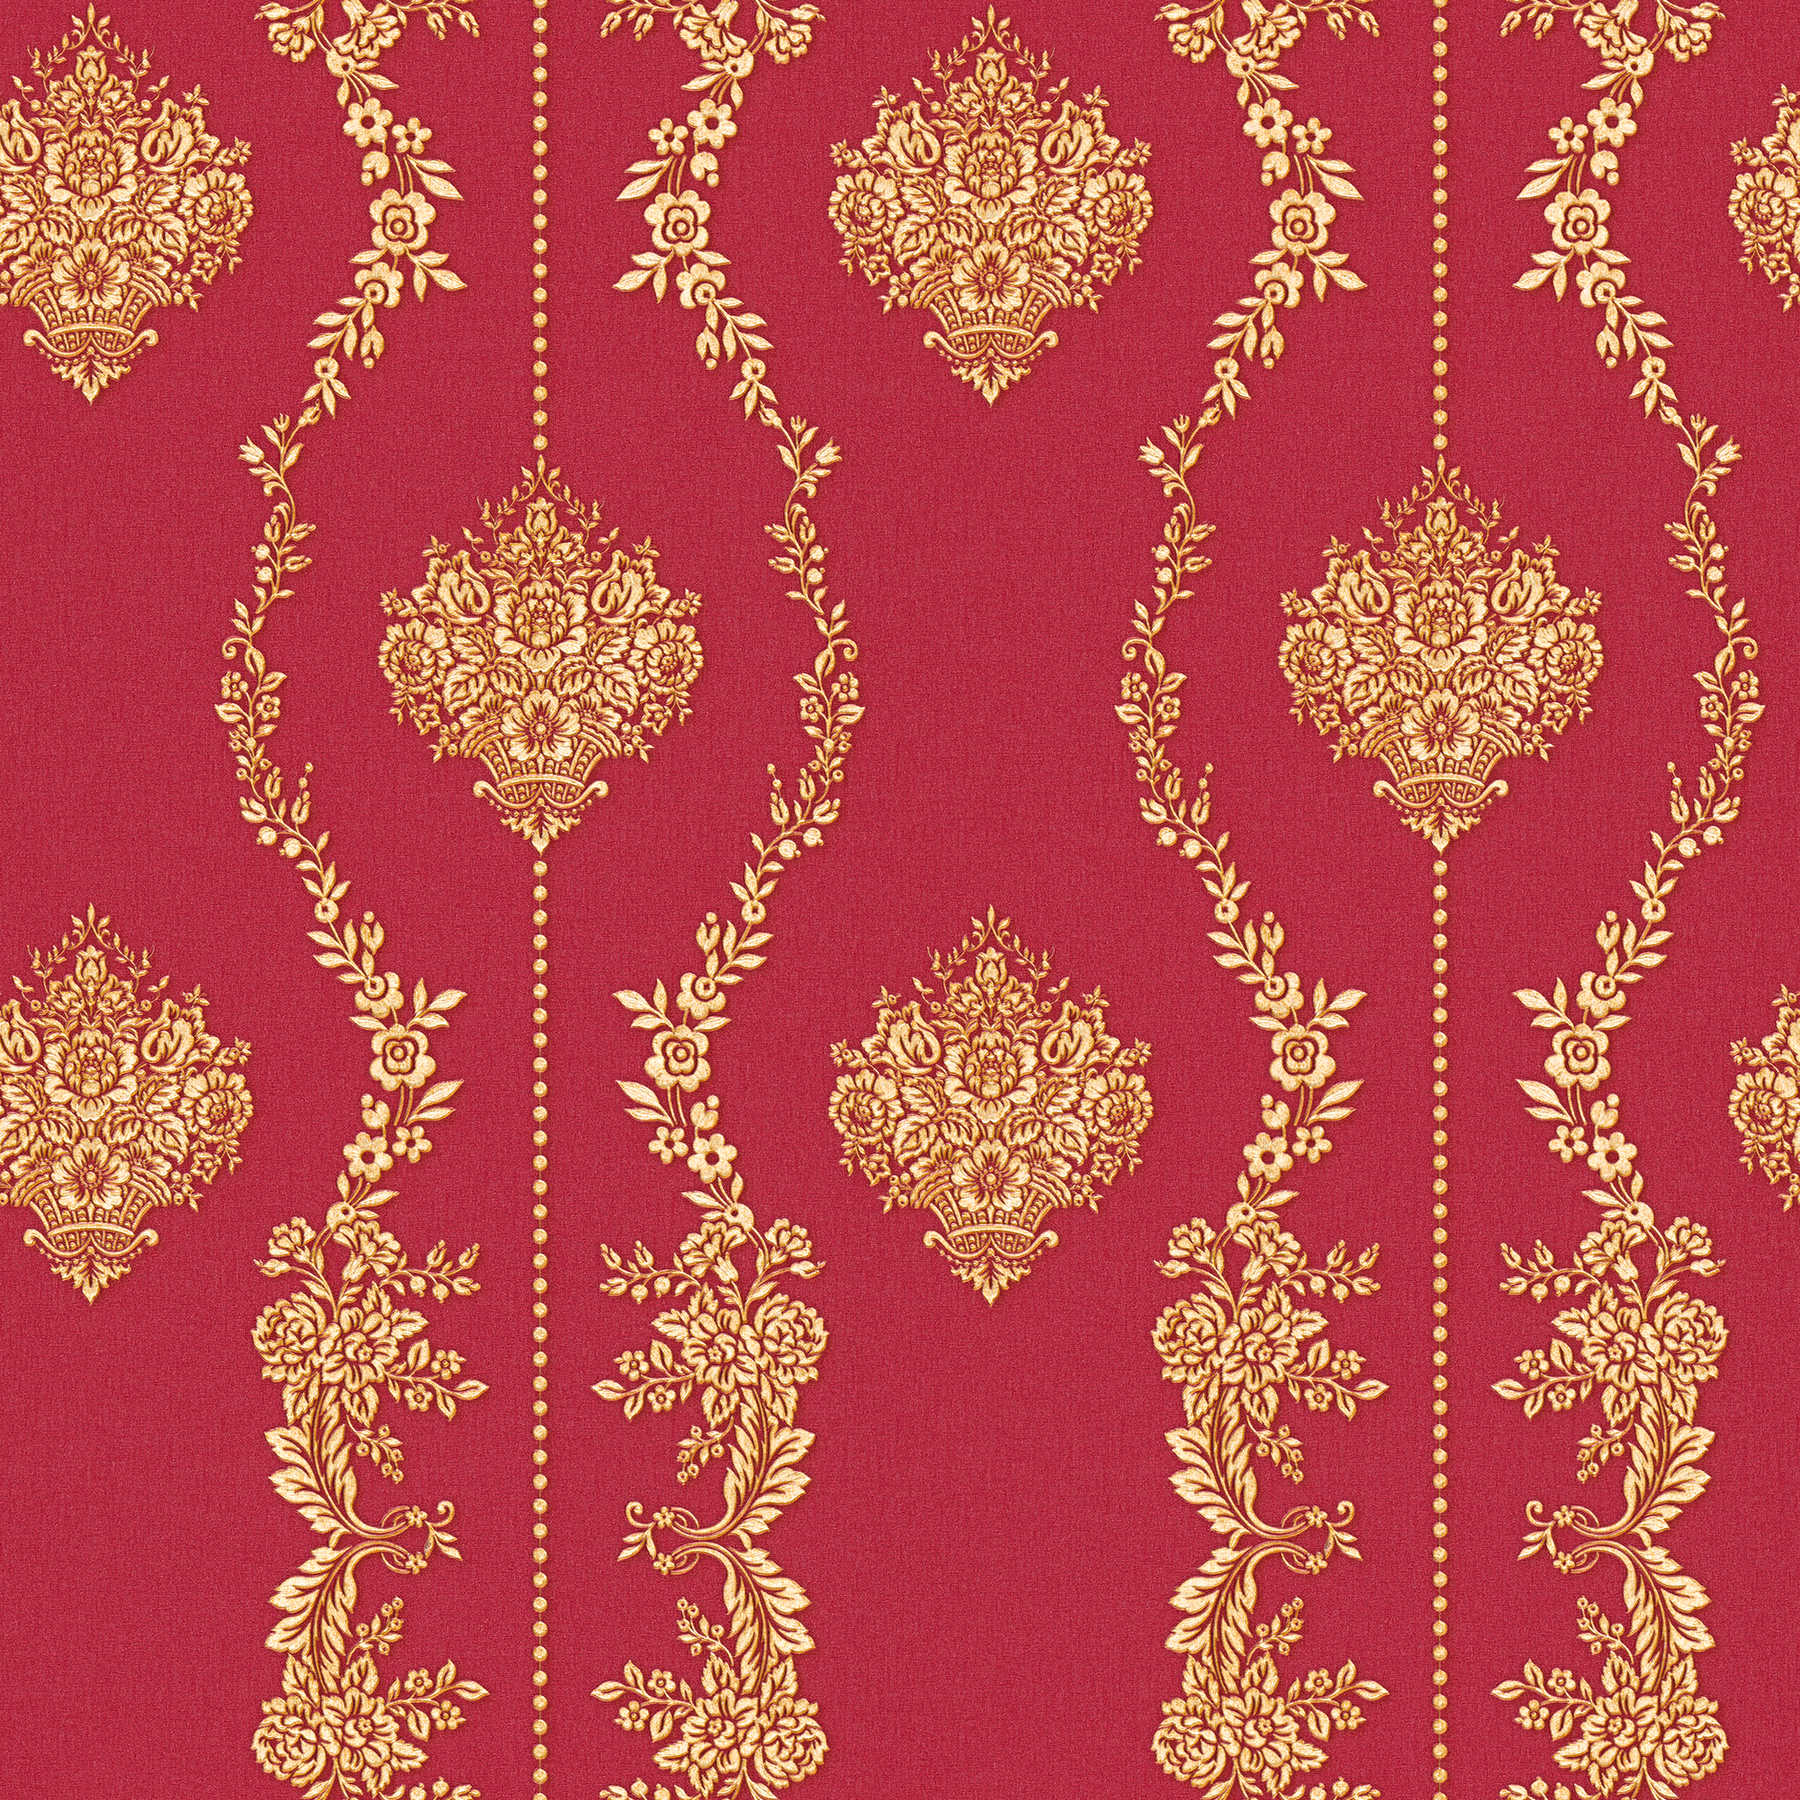 Klassiek ornamentbehang met goudeffect - metallic, rood
